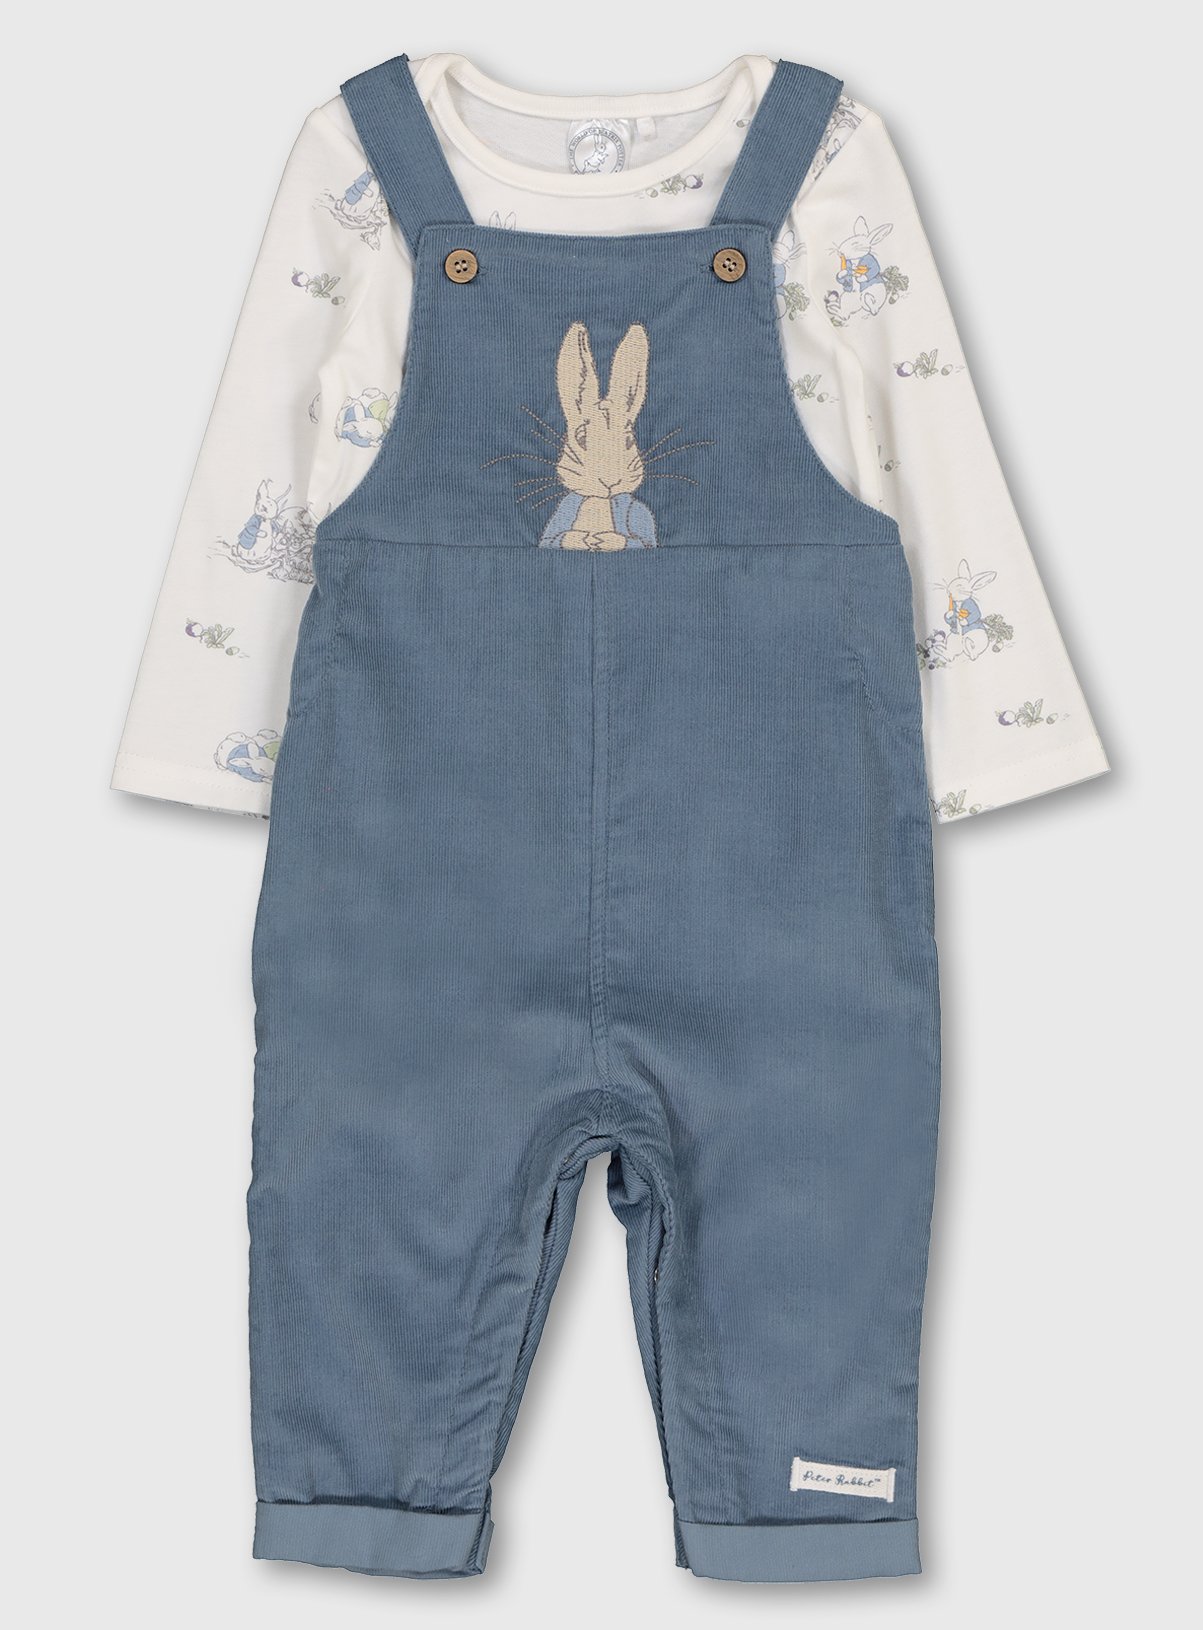 peter rabbit newborn outfit